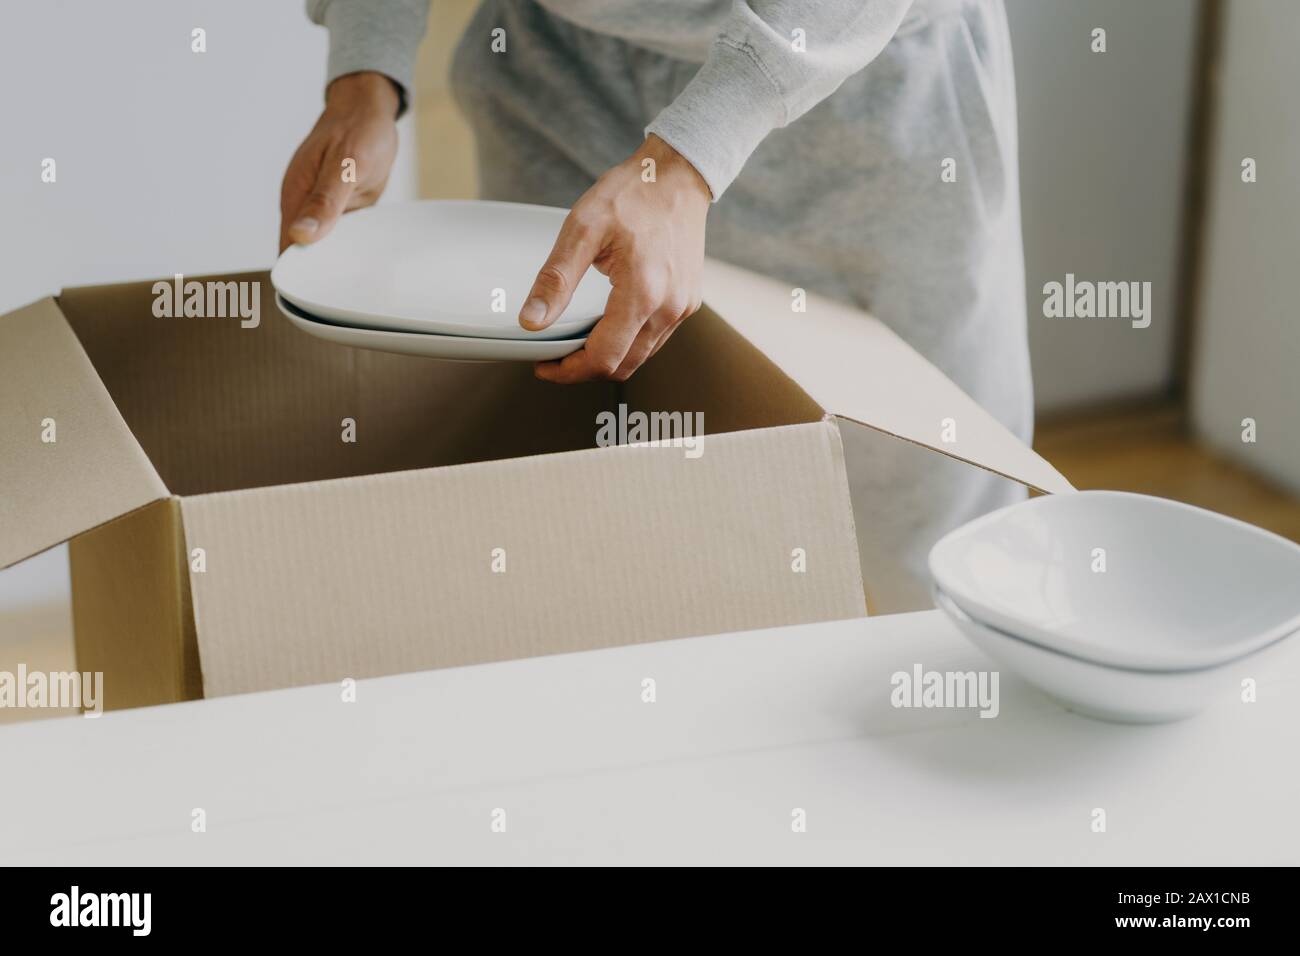 Zugeschnittenes Bild eines unbekannten gesichtslosen beschäftigten Mannes entpackt Kisten mit Geschirr, hält weiße Teller, bewegt sich in neuer Wohnung, tickt in der Küche auf, hat einen beweglichen Tag Stockfoto